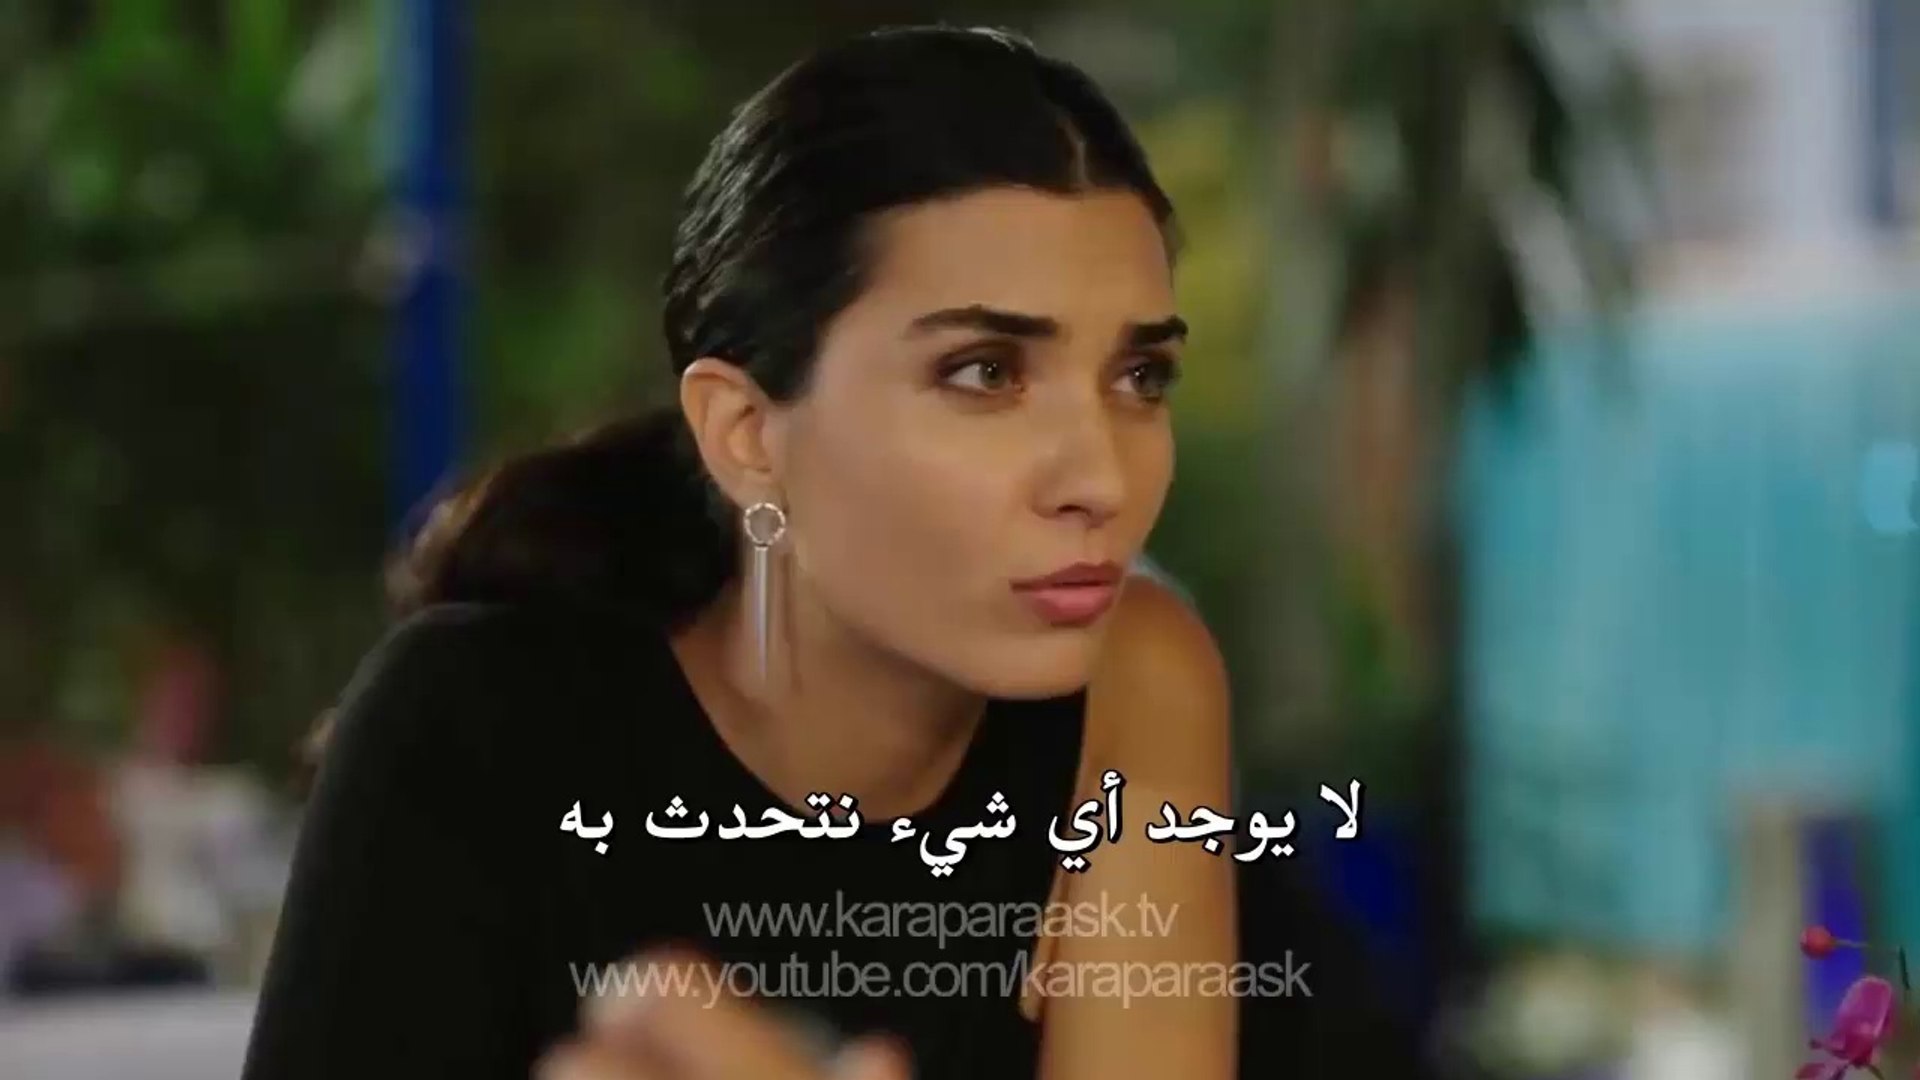 مسلسل العشق المشبوه الجزء الثاني - اعلان 2 الحلقة 4 مترجم للعربية - video  Dailymotion